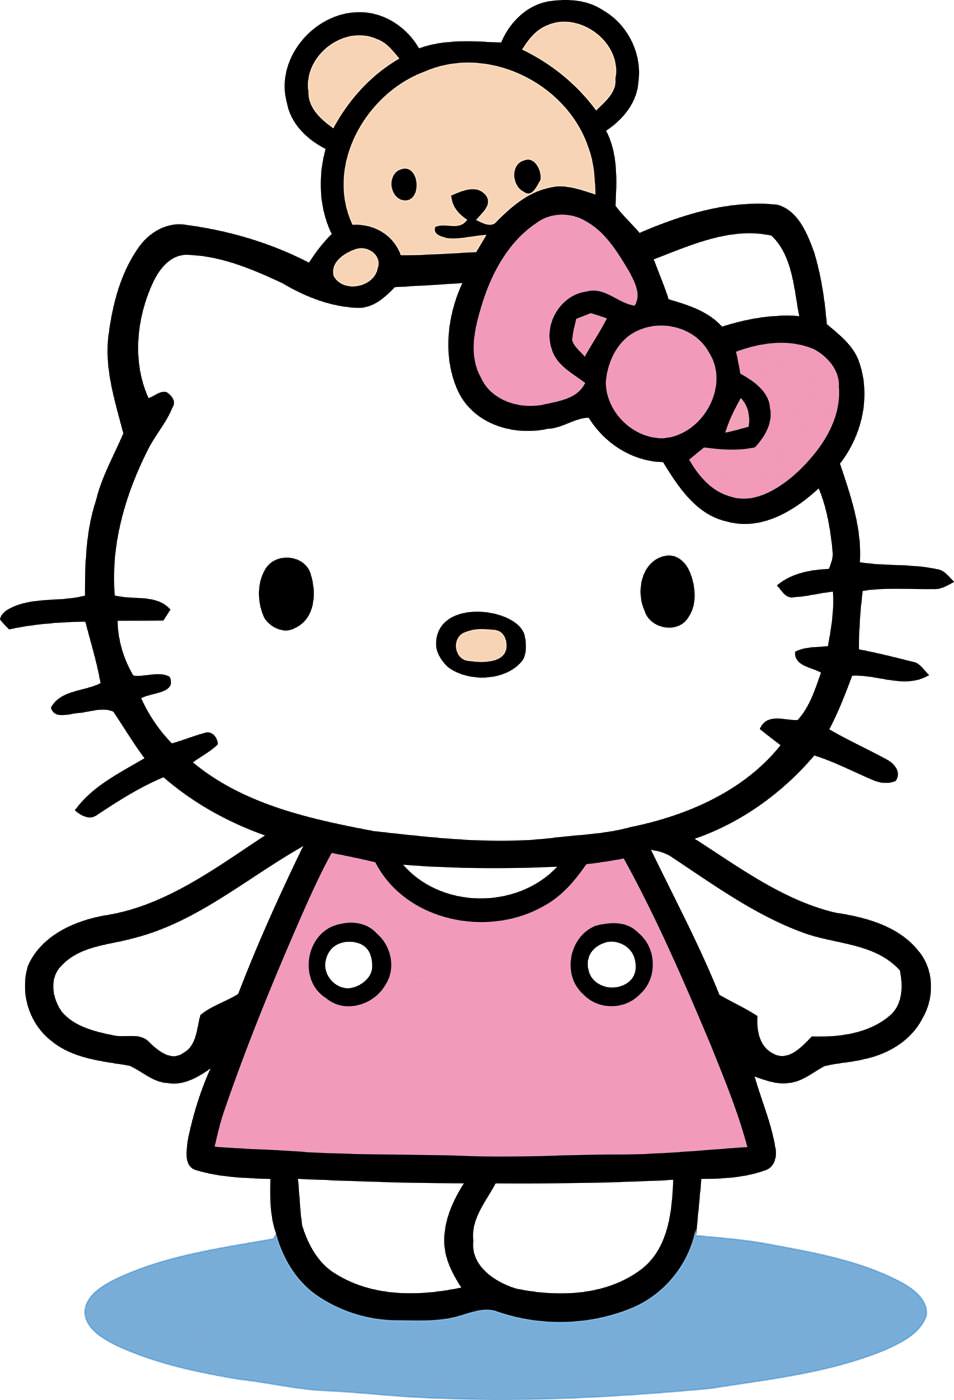 Hello Kitty - Фотообои для детской комнаты в интернет магазине arte.ru. Заказать обои в детскую комнату Hello Kitty - (14307)